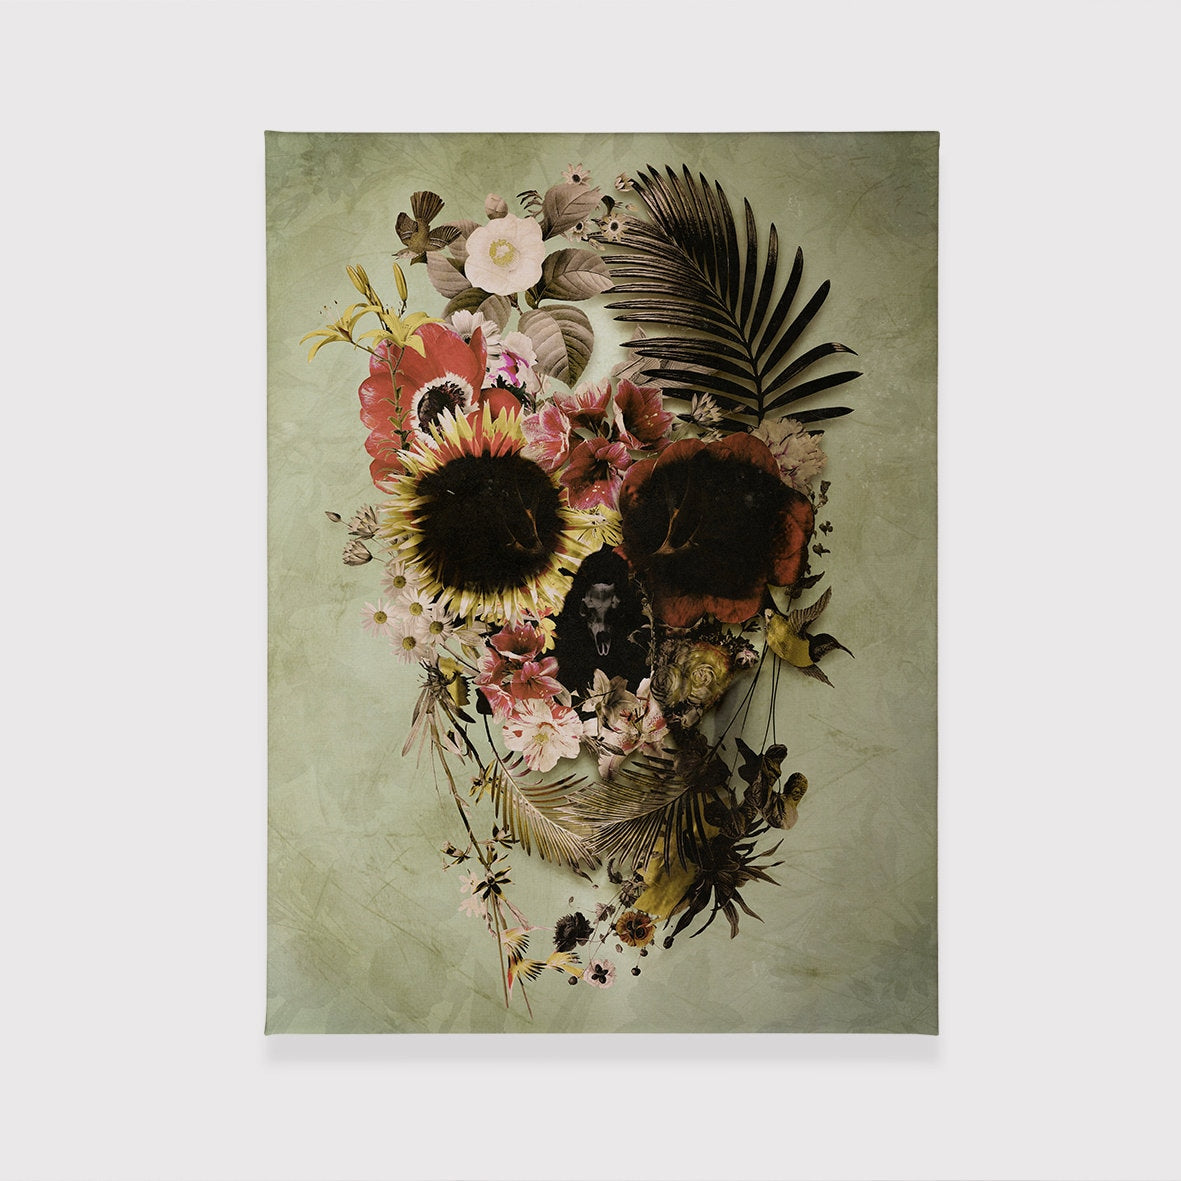 Garden Skull Canvas Print, Floral Skull Wall Art, Flower Skull Art Home Decor Gift, Sugar Skull Canvas Art, Skull Illustration By Ali Gulec